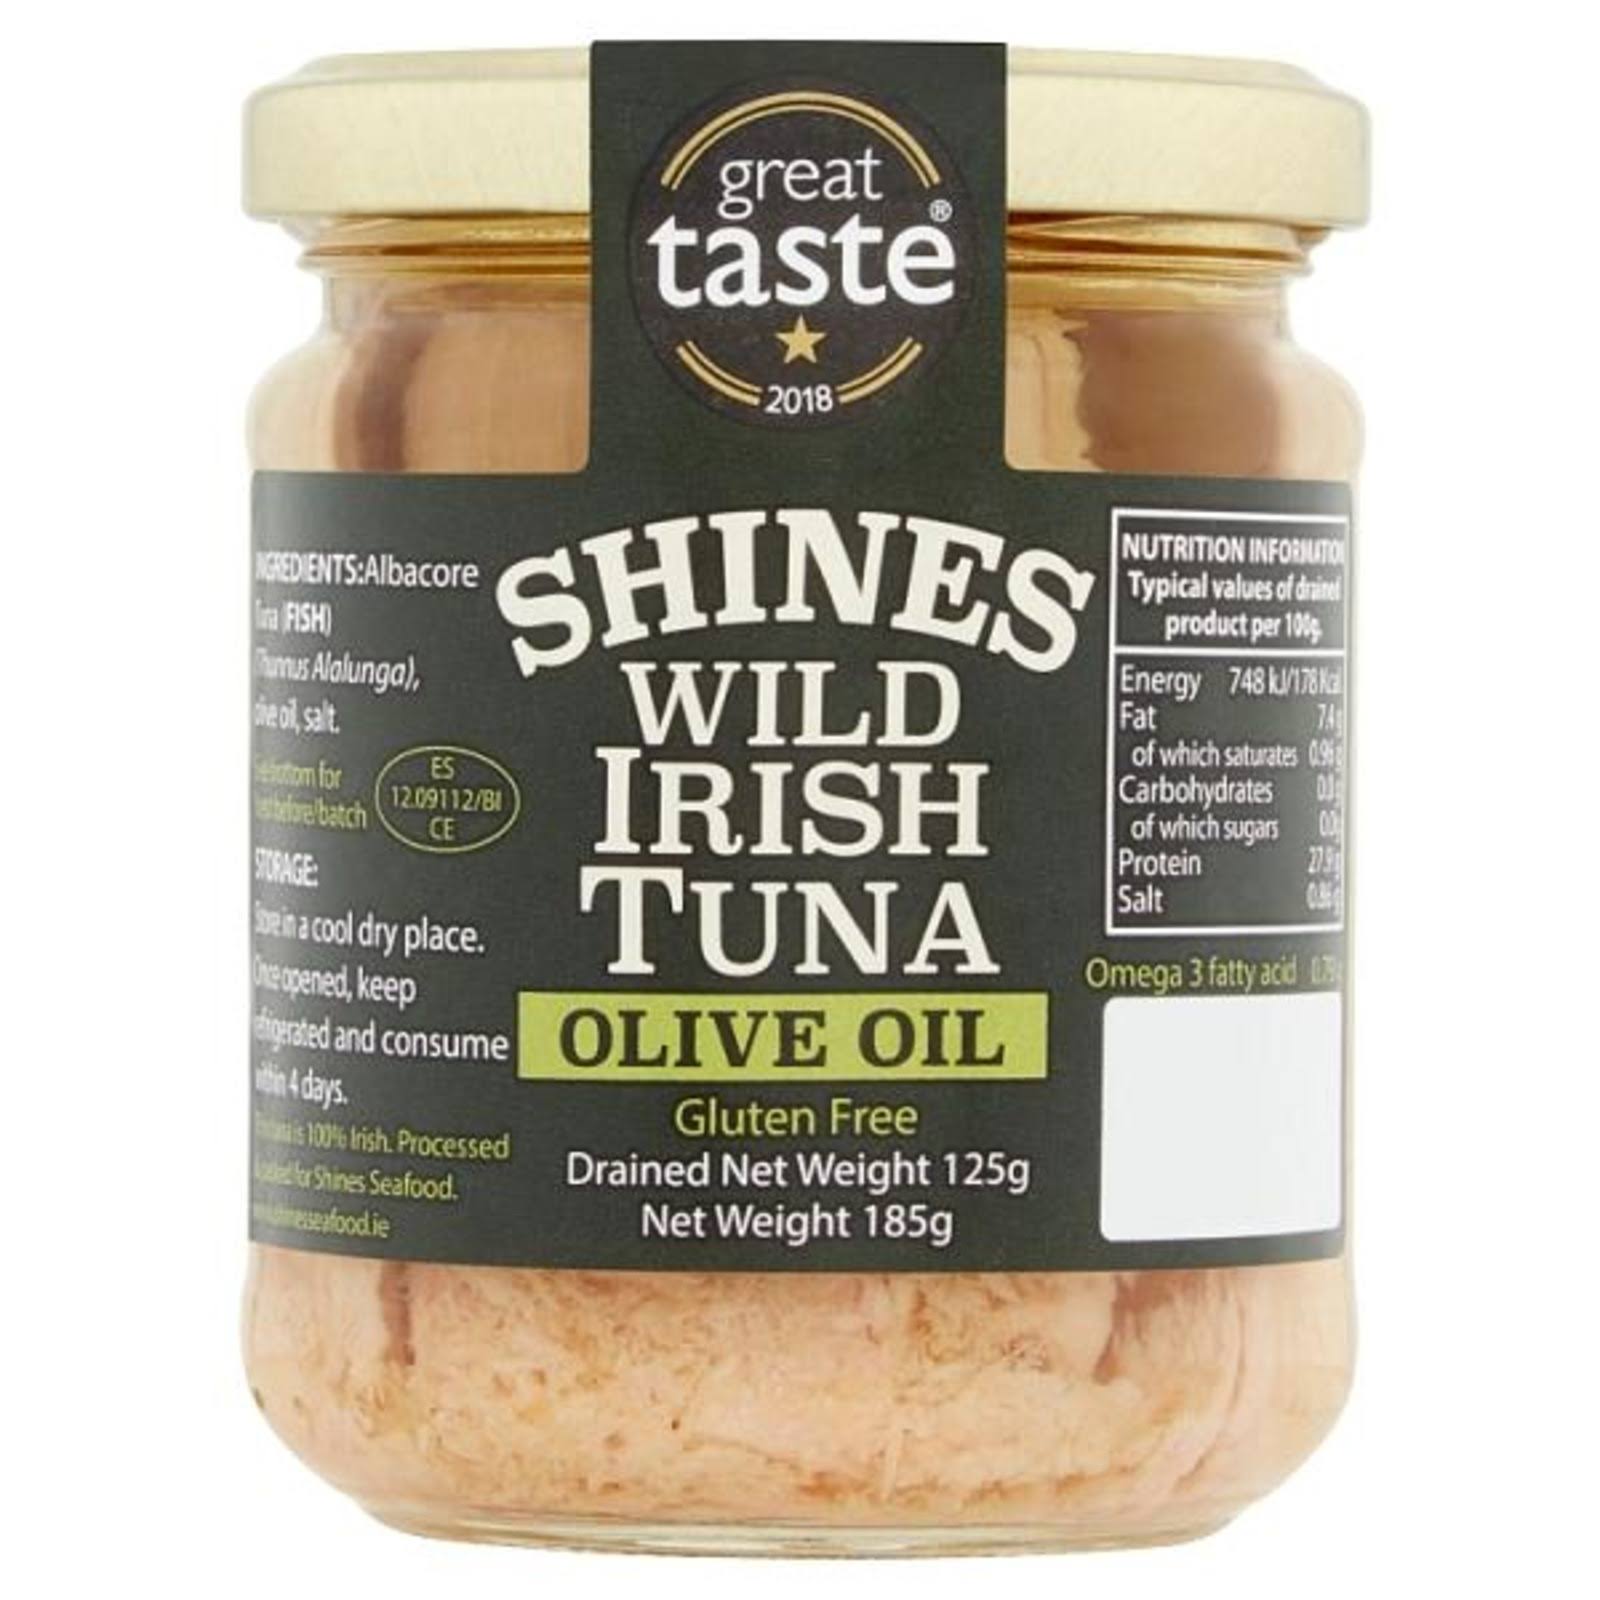 Shines Wild Irish Tuna - 185g